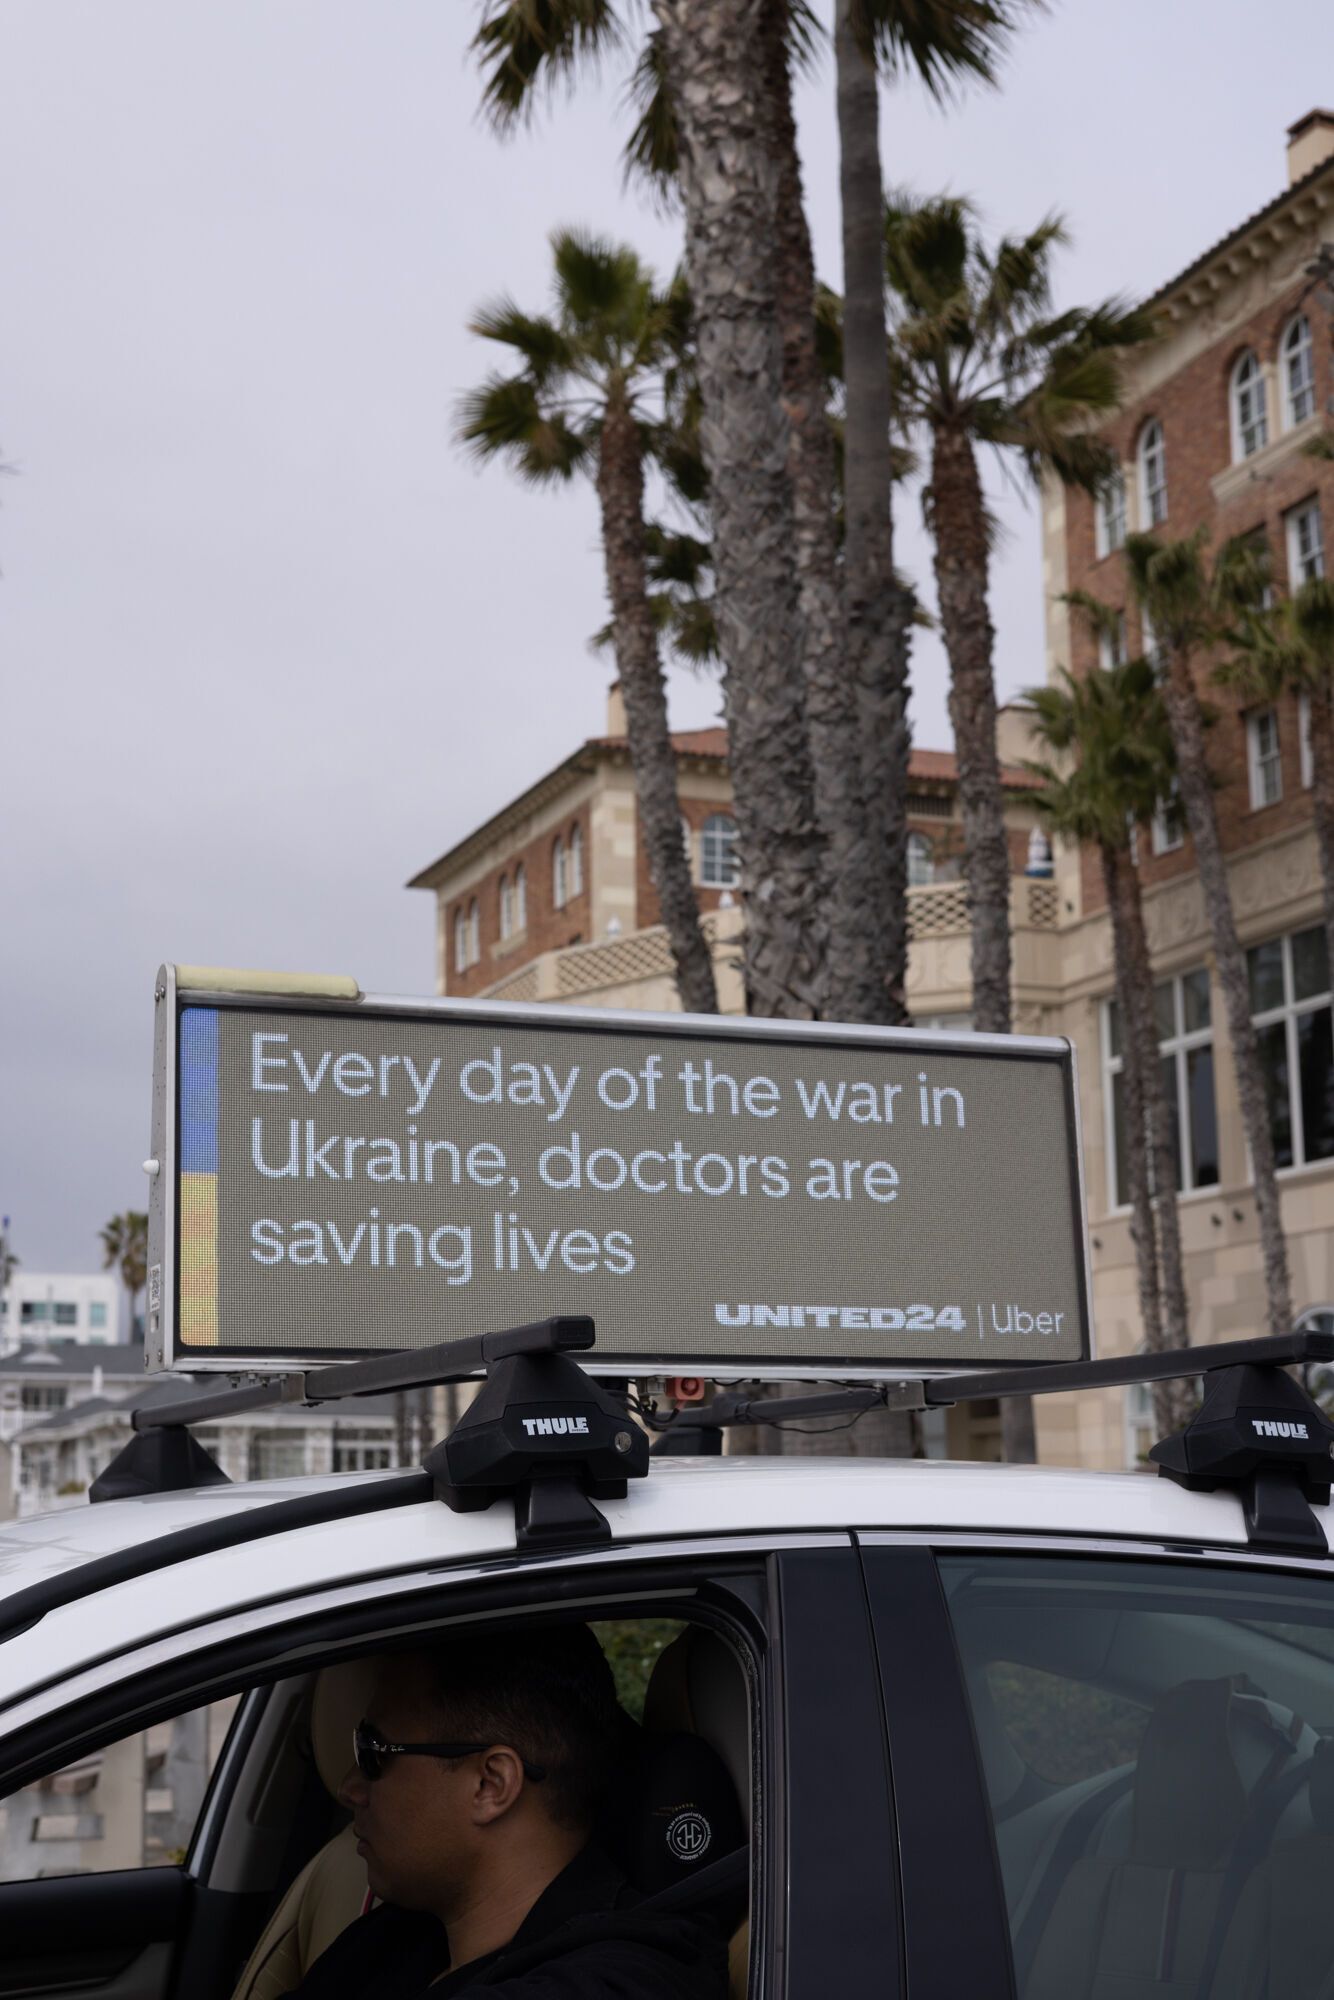 Uber запустил две кампании в поддержку Украины к годовщине полномасштабного вторжения